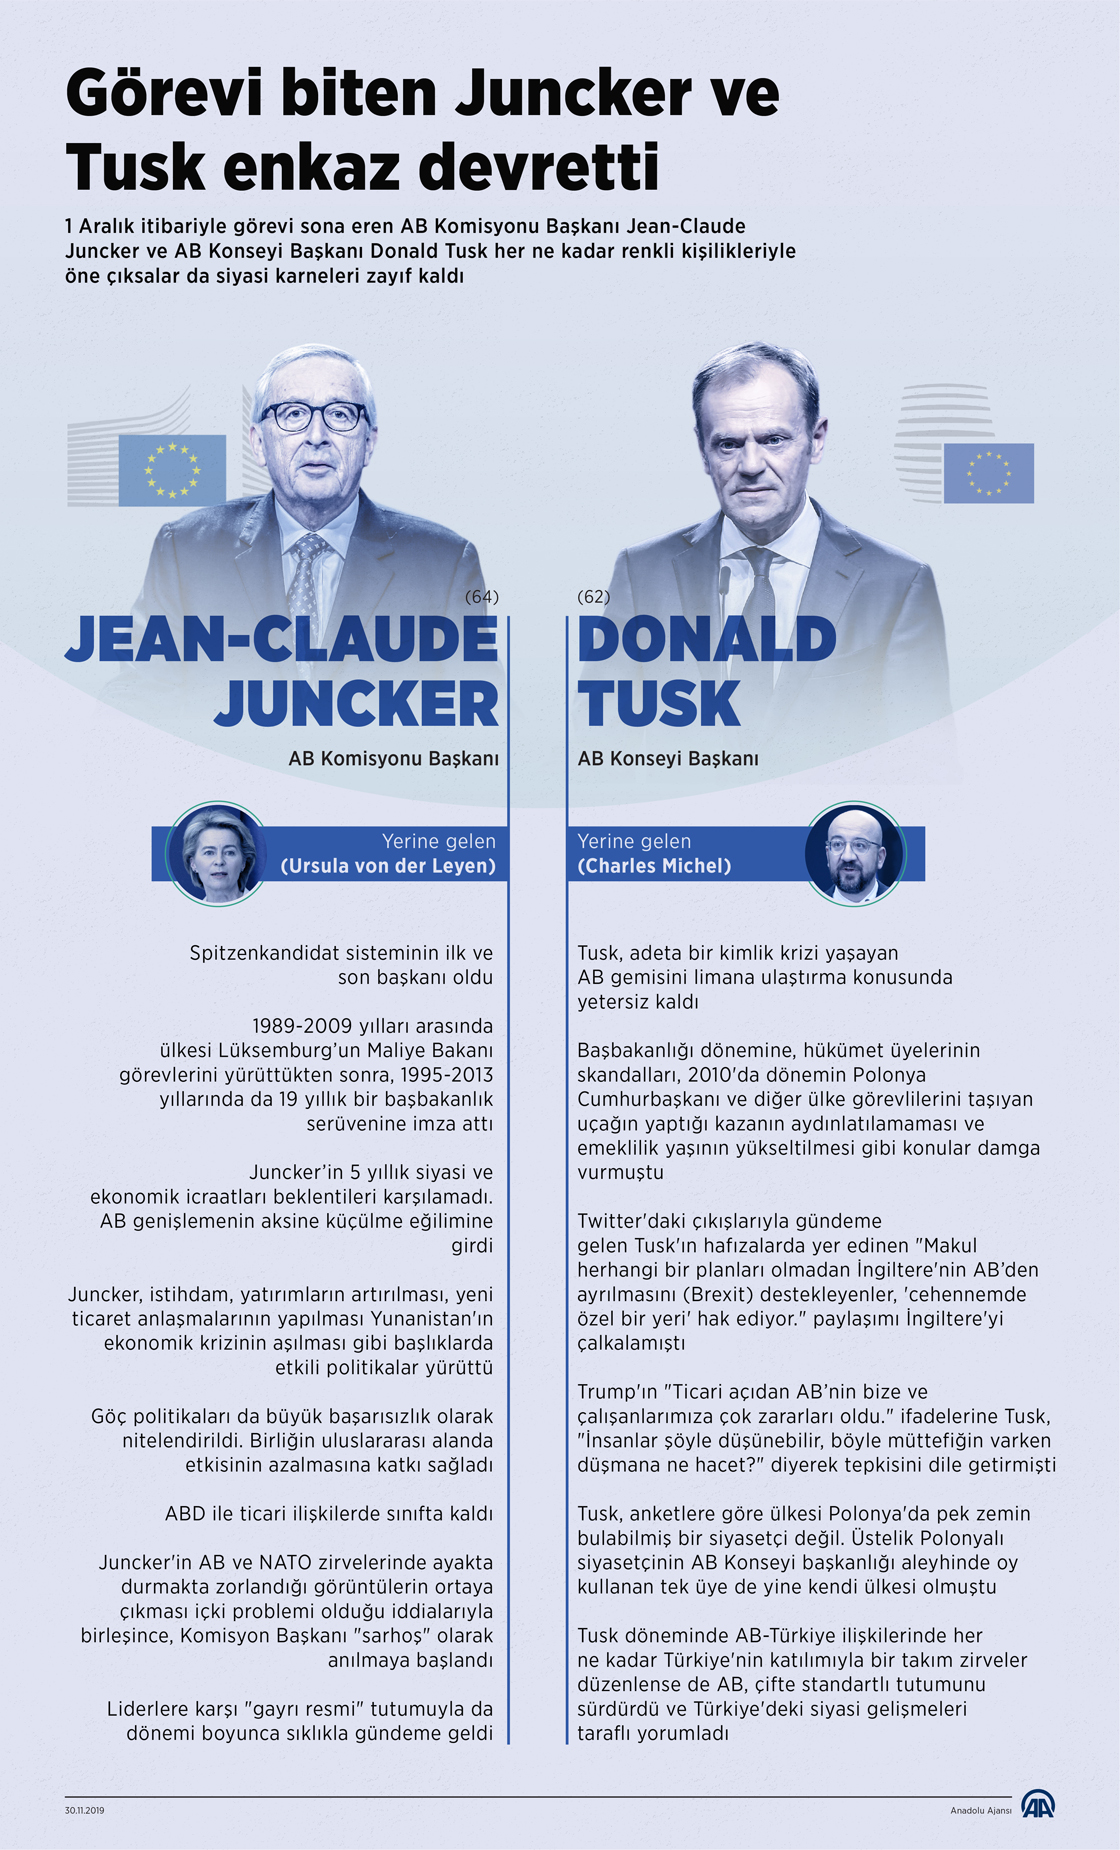 Görevi biten Juncker ve Tusk enkaz devretti